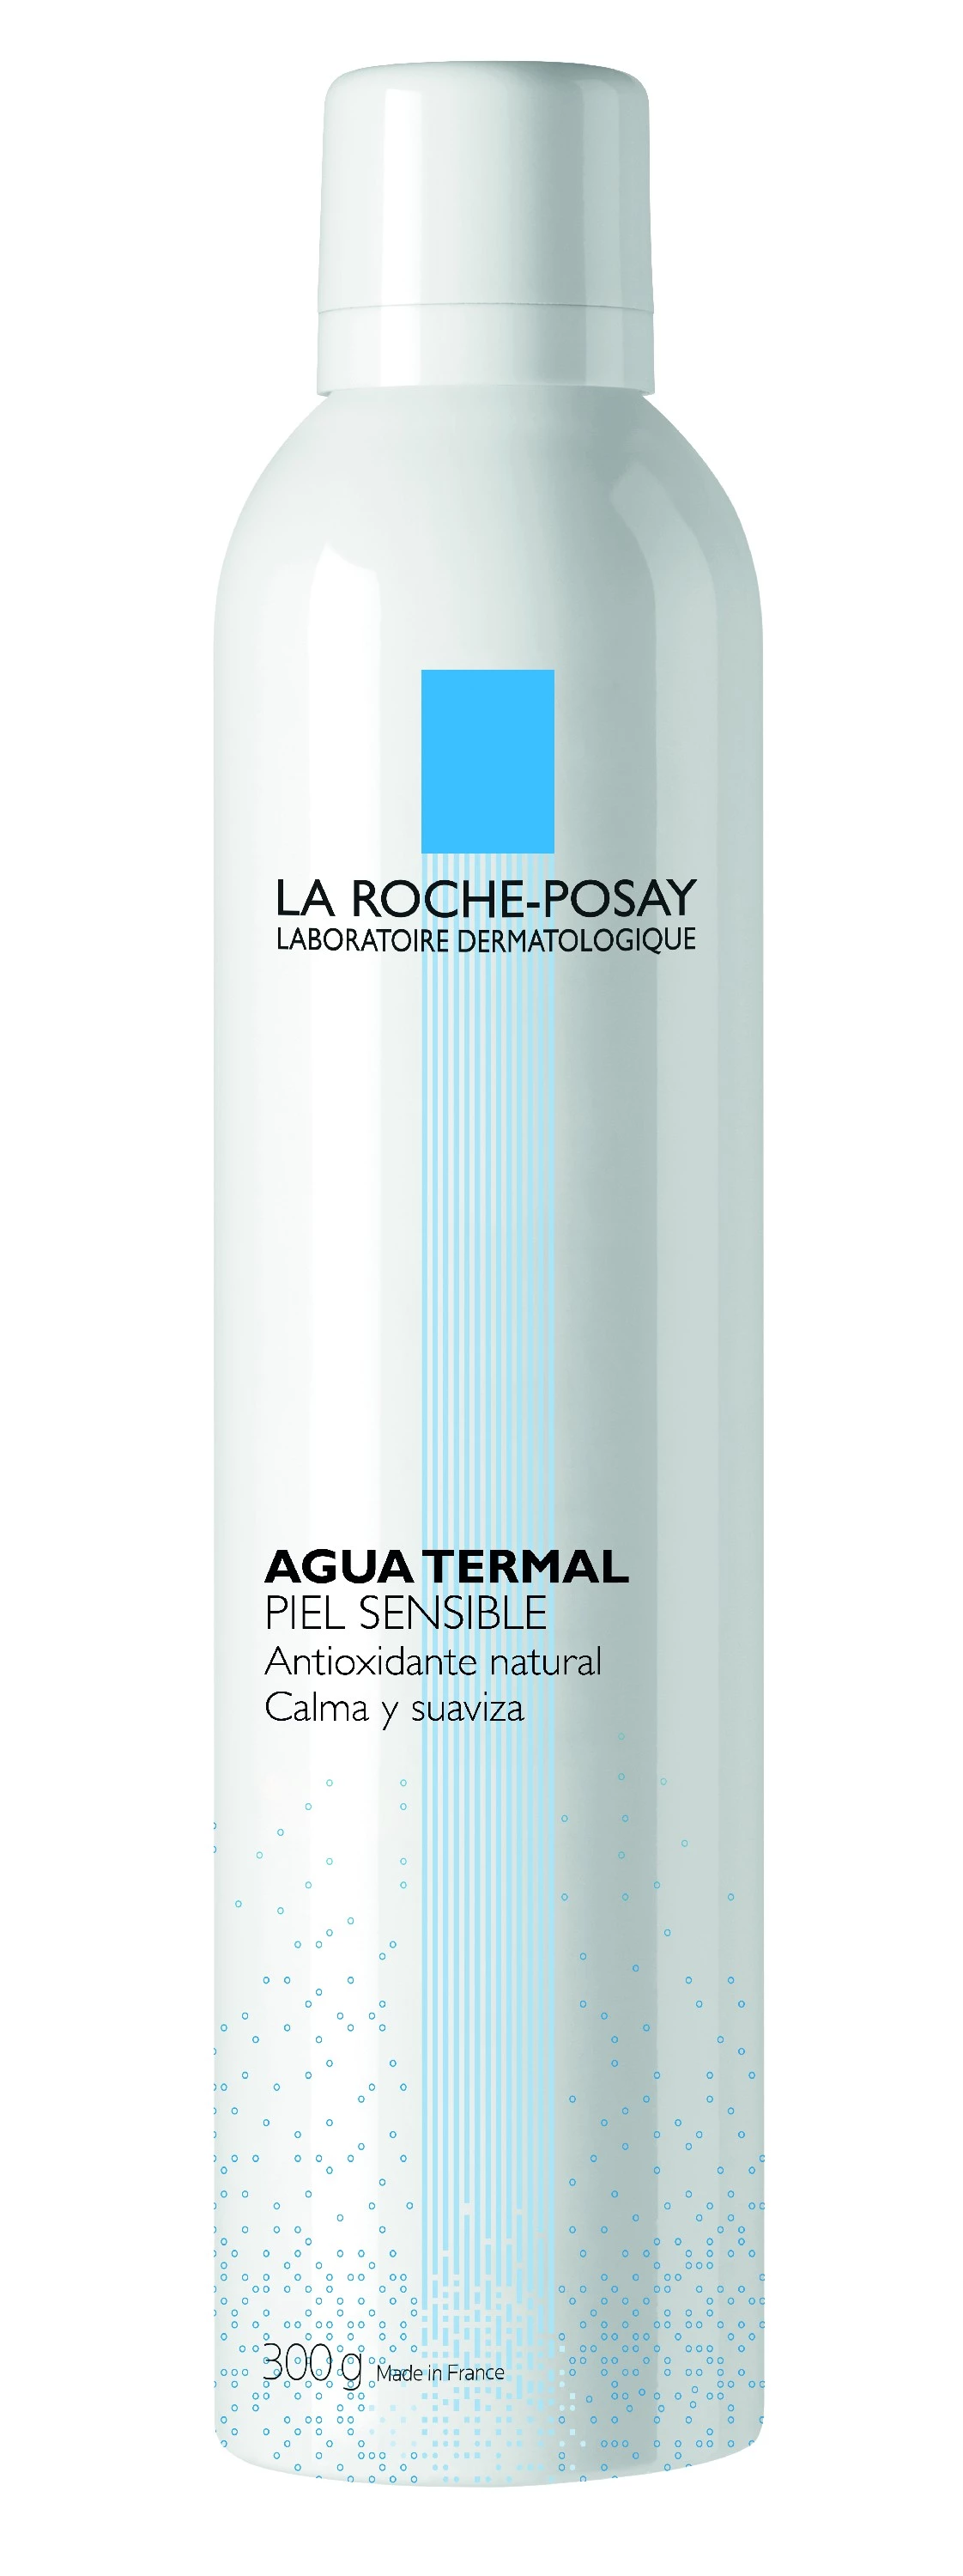 La Roche-Posay Agua Termal, 300g